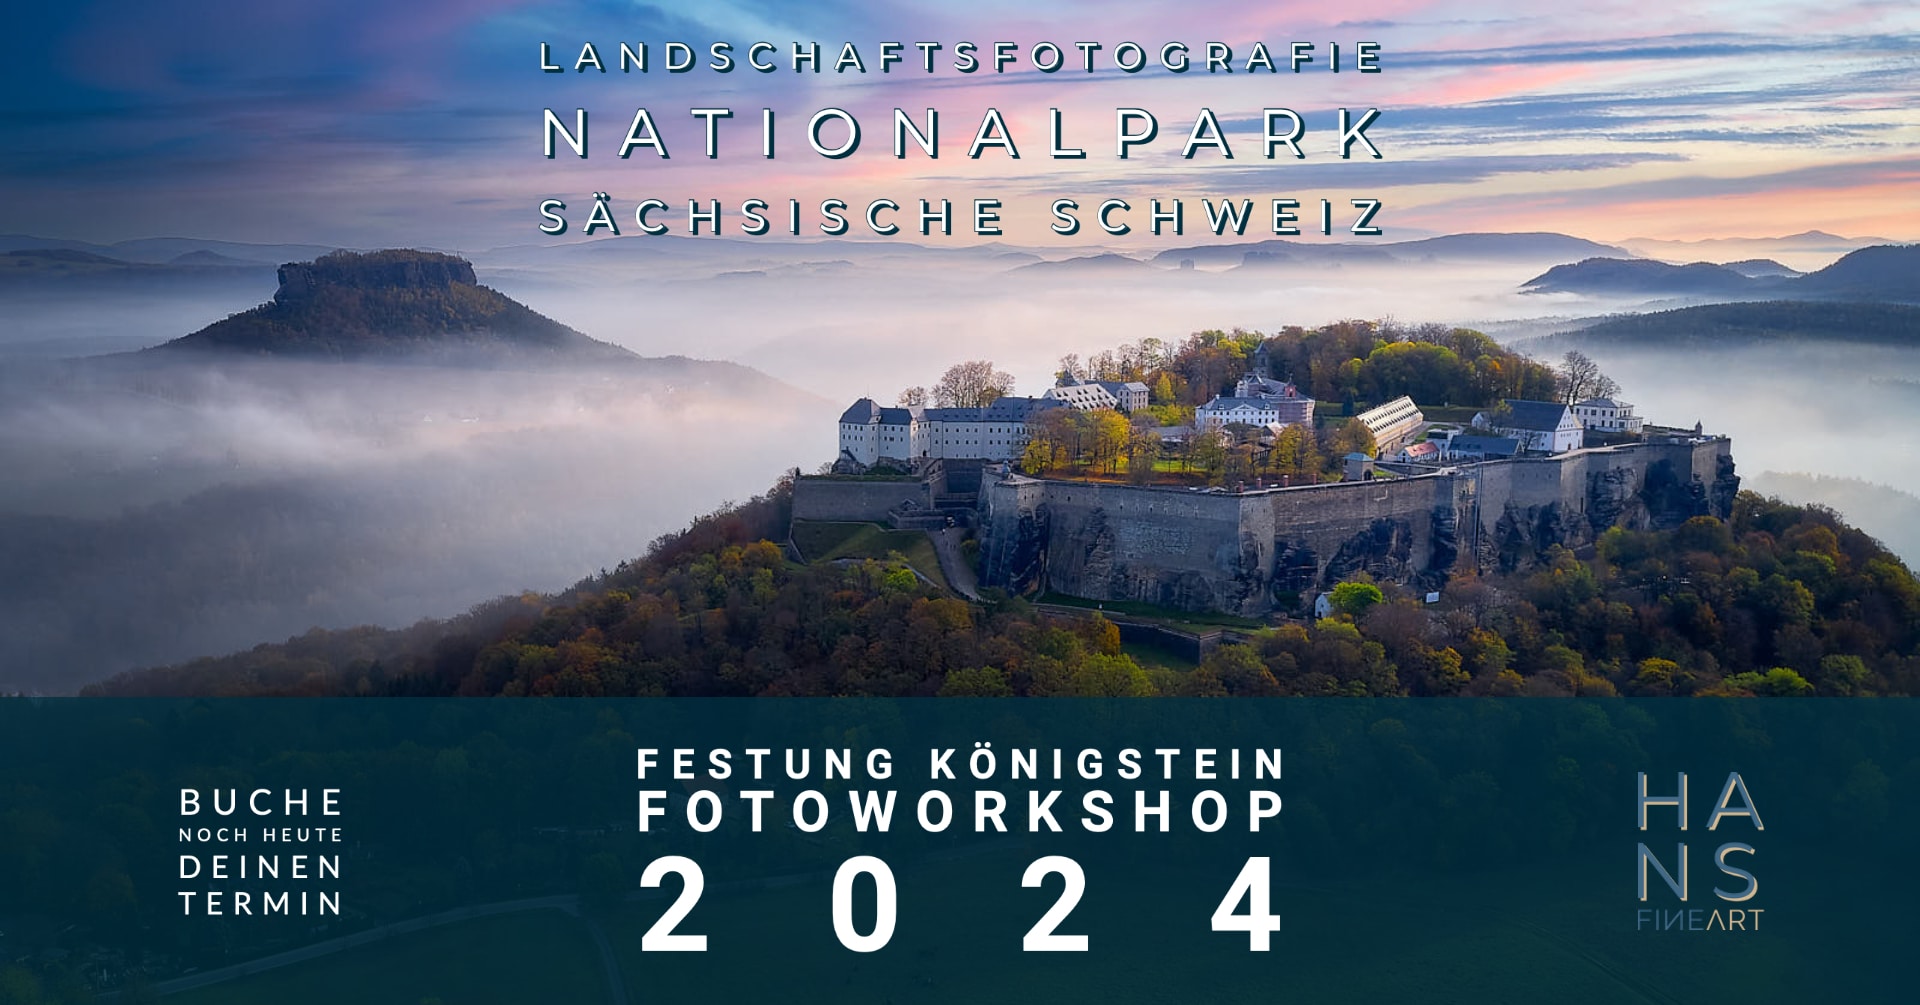 Landschaftsfotografie Sächsische Schweiz Festung Königstein Hans Fineart